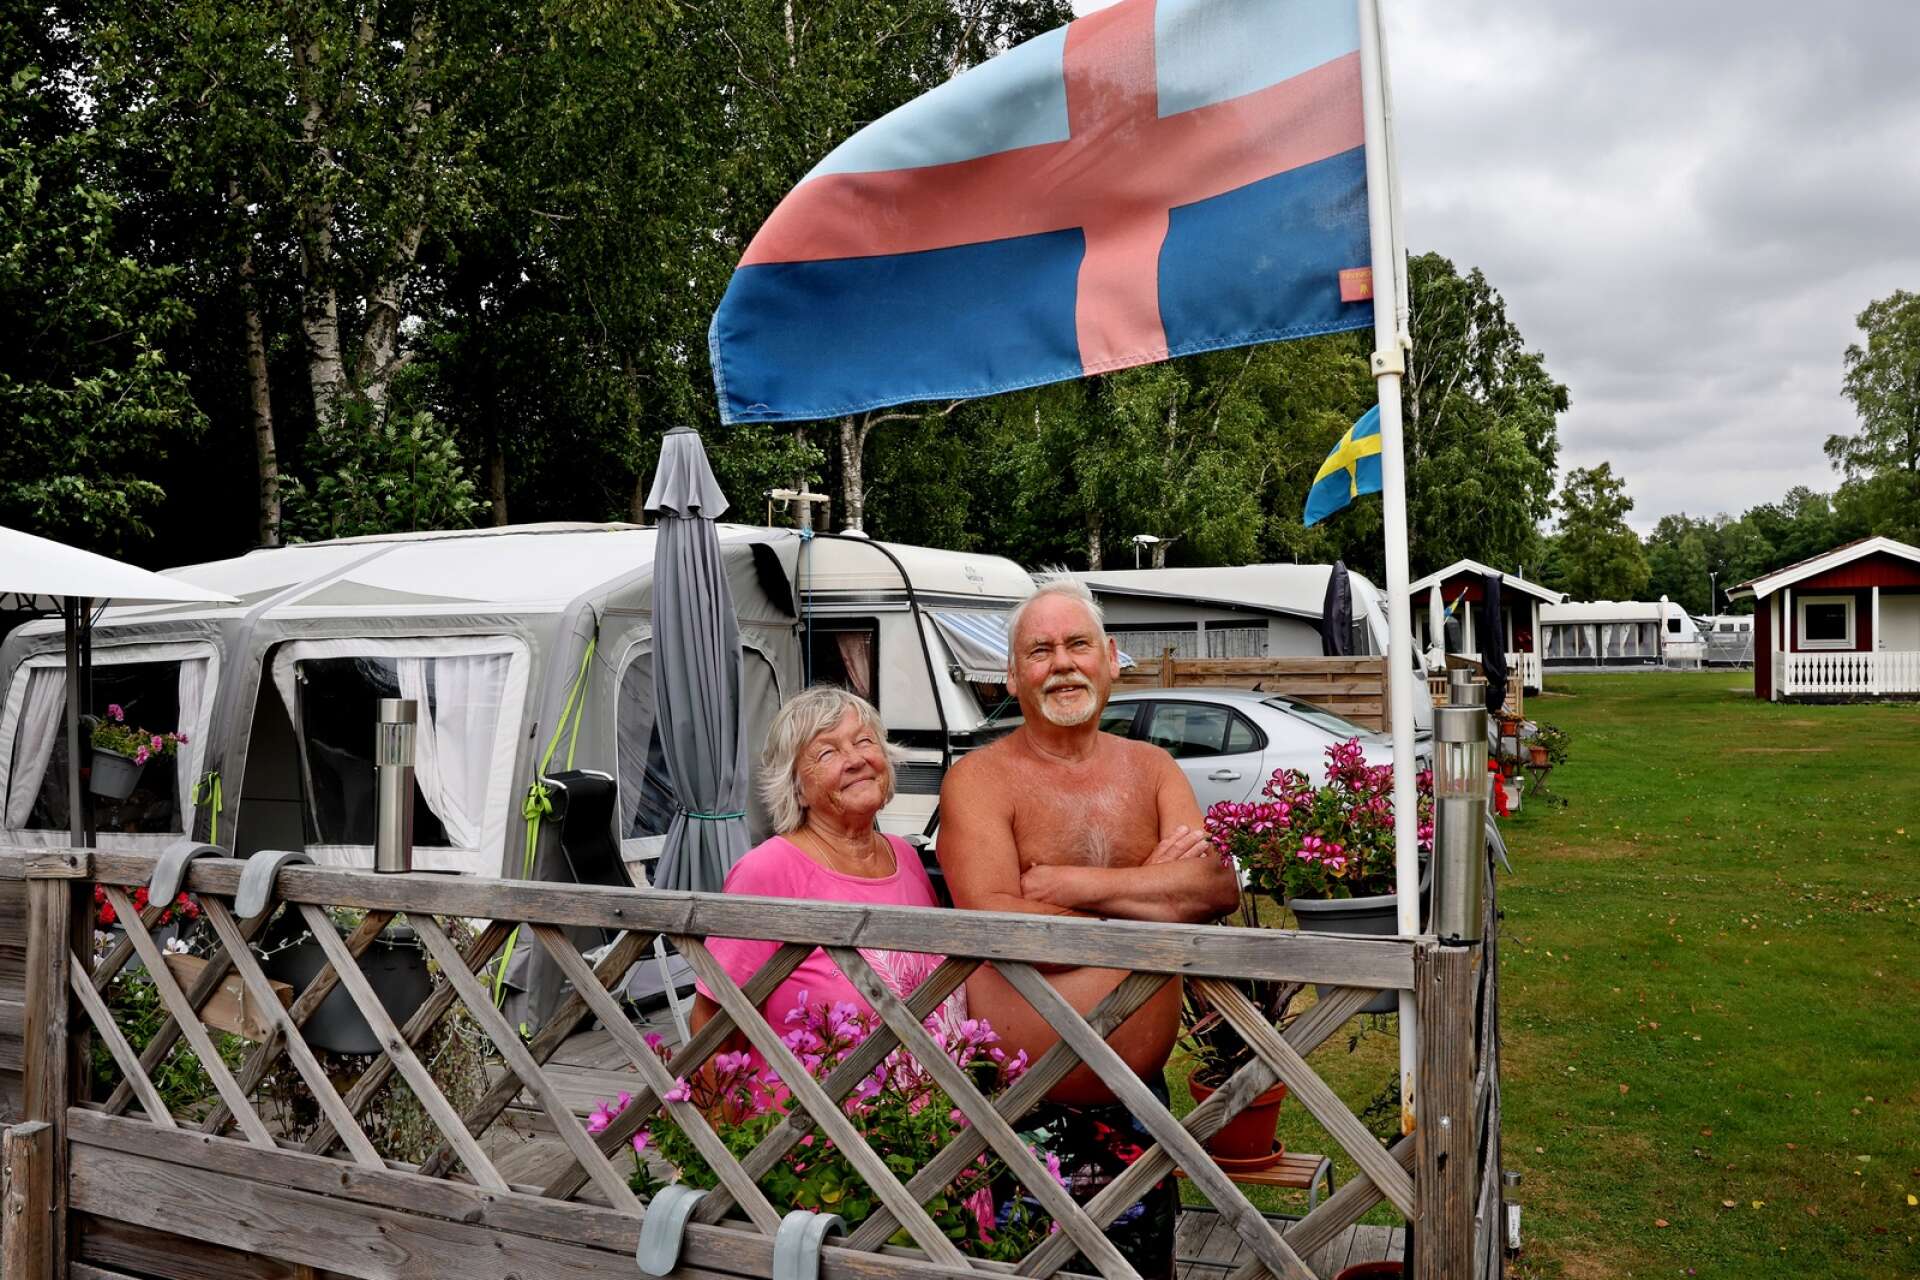 Paret Håkan och Christina Werner visar stolt upp sin flagga från Bohuslän. Från boendet i Svanesund åker de till Filsbäck för semester.